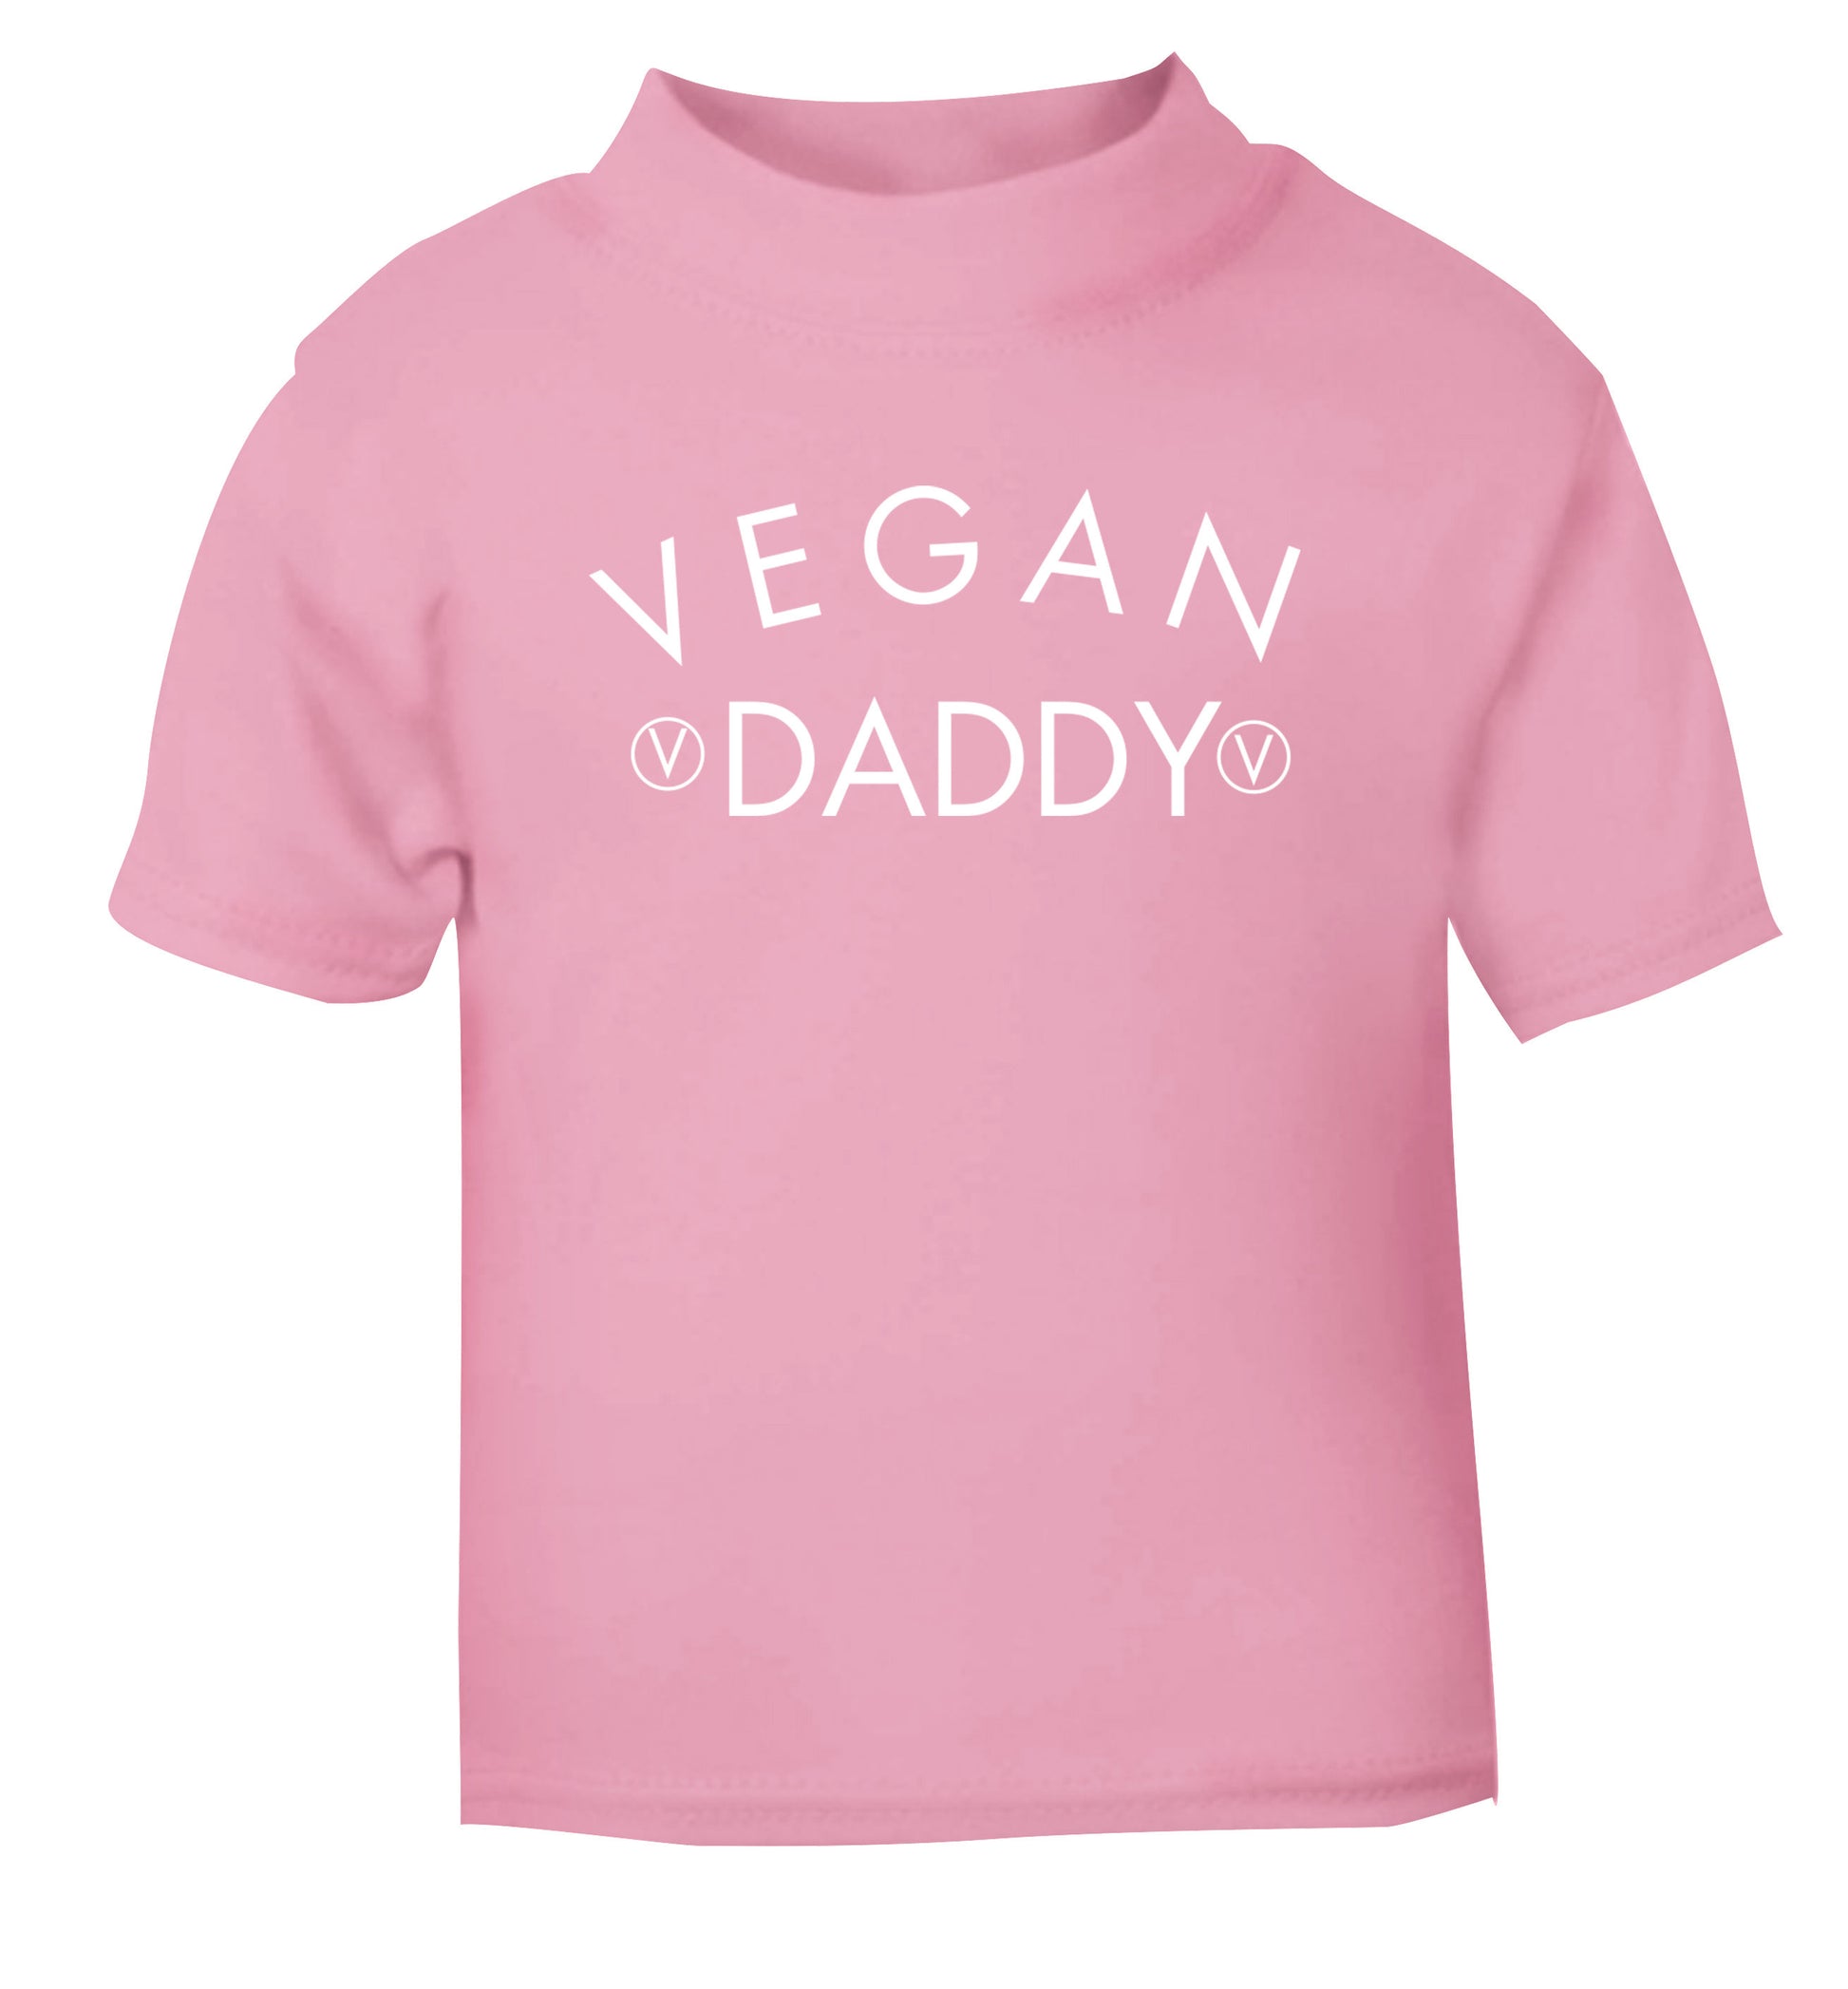 Vegan daddy light pink Baby Toddler Tshirt 2 Years